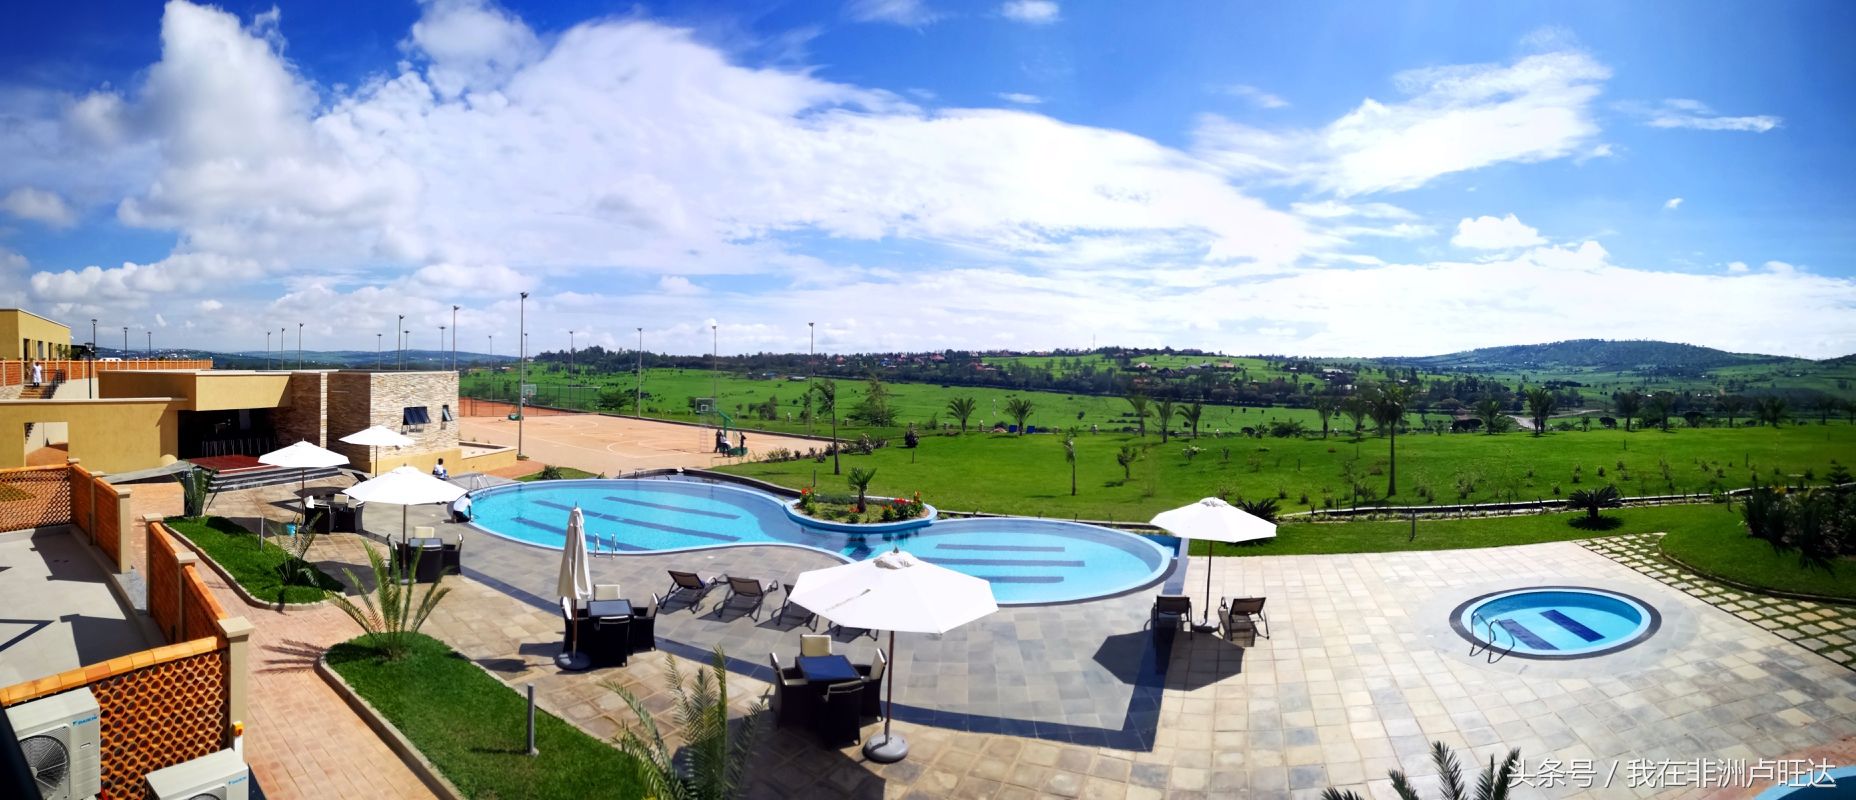 贫穷的非洲卢旺达:四星级酒店的奢华,别被限制